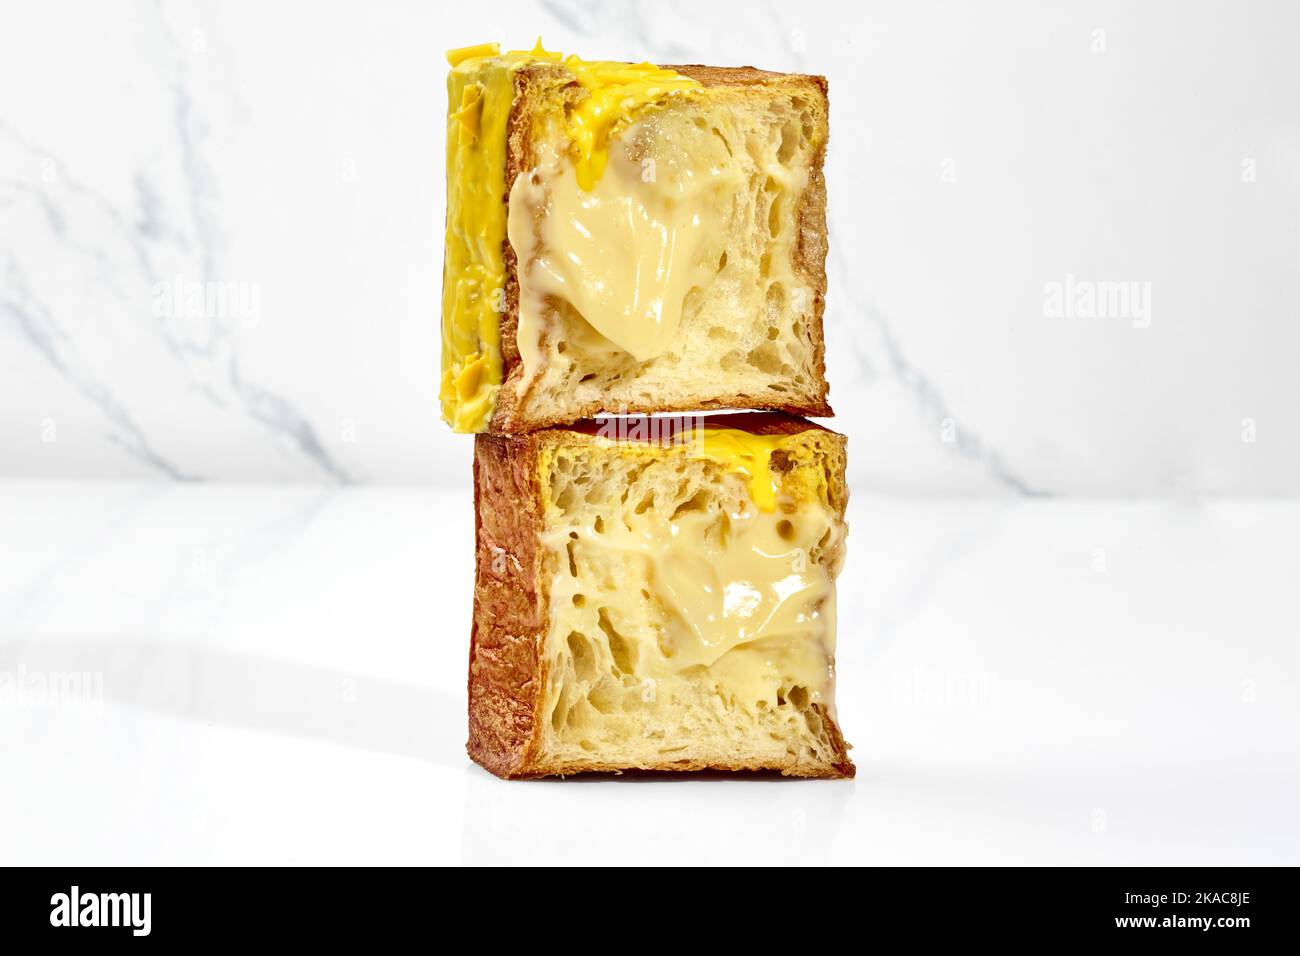 Croissant cubique croustillant avec garniture à la crème vanille, glaçage jaune et copeaux de chocolat Banque D'Images